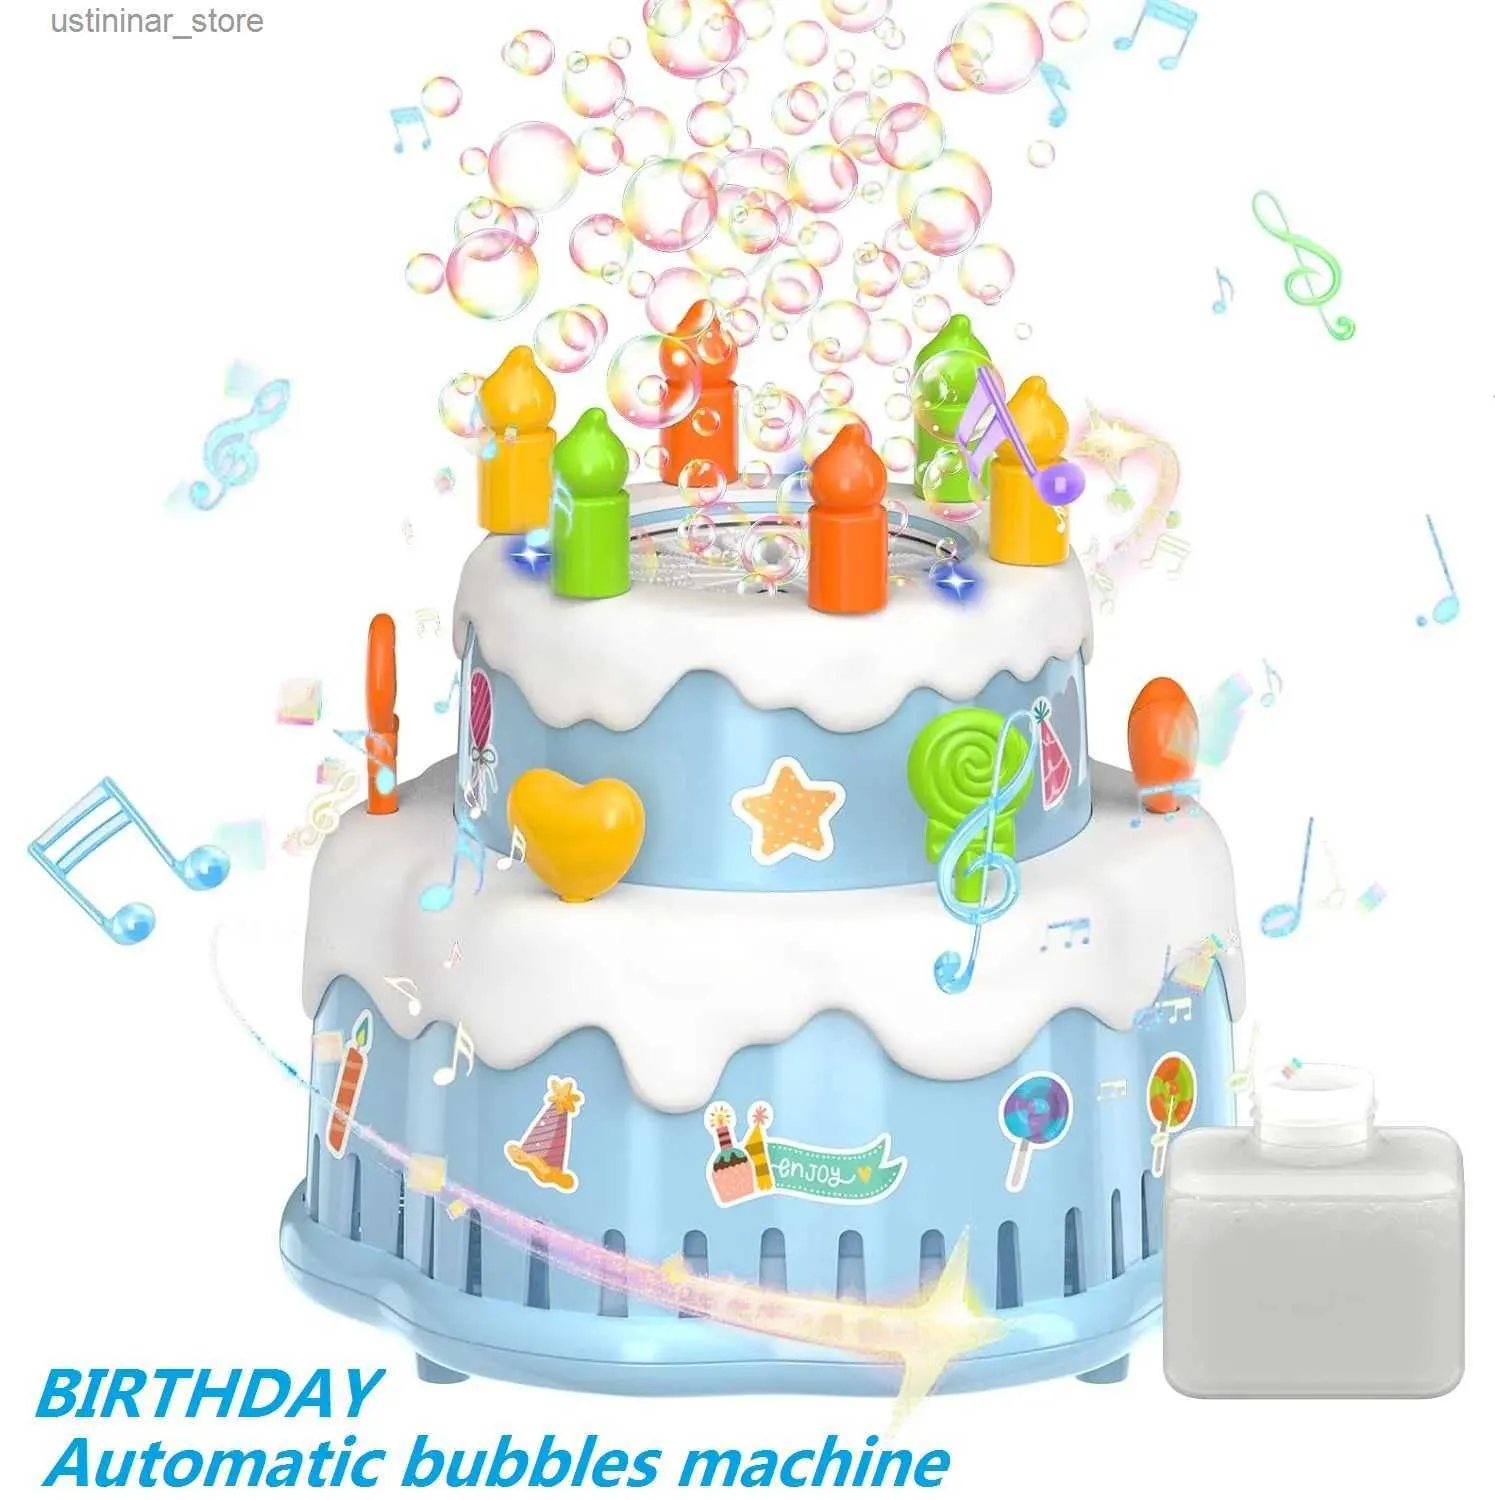 Sand Play Water Fun Birthday Cake Bubble Machine für Kinder Automatisch 10000+ Blasen pro Minute/Lichter/Musik S Spielzeug für R Boys Girls Geburtstagsfeiern L47